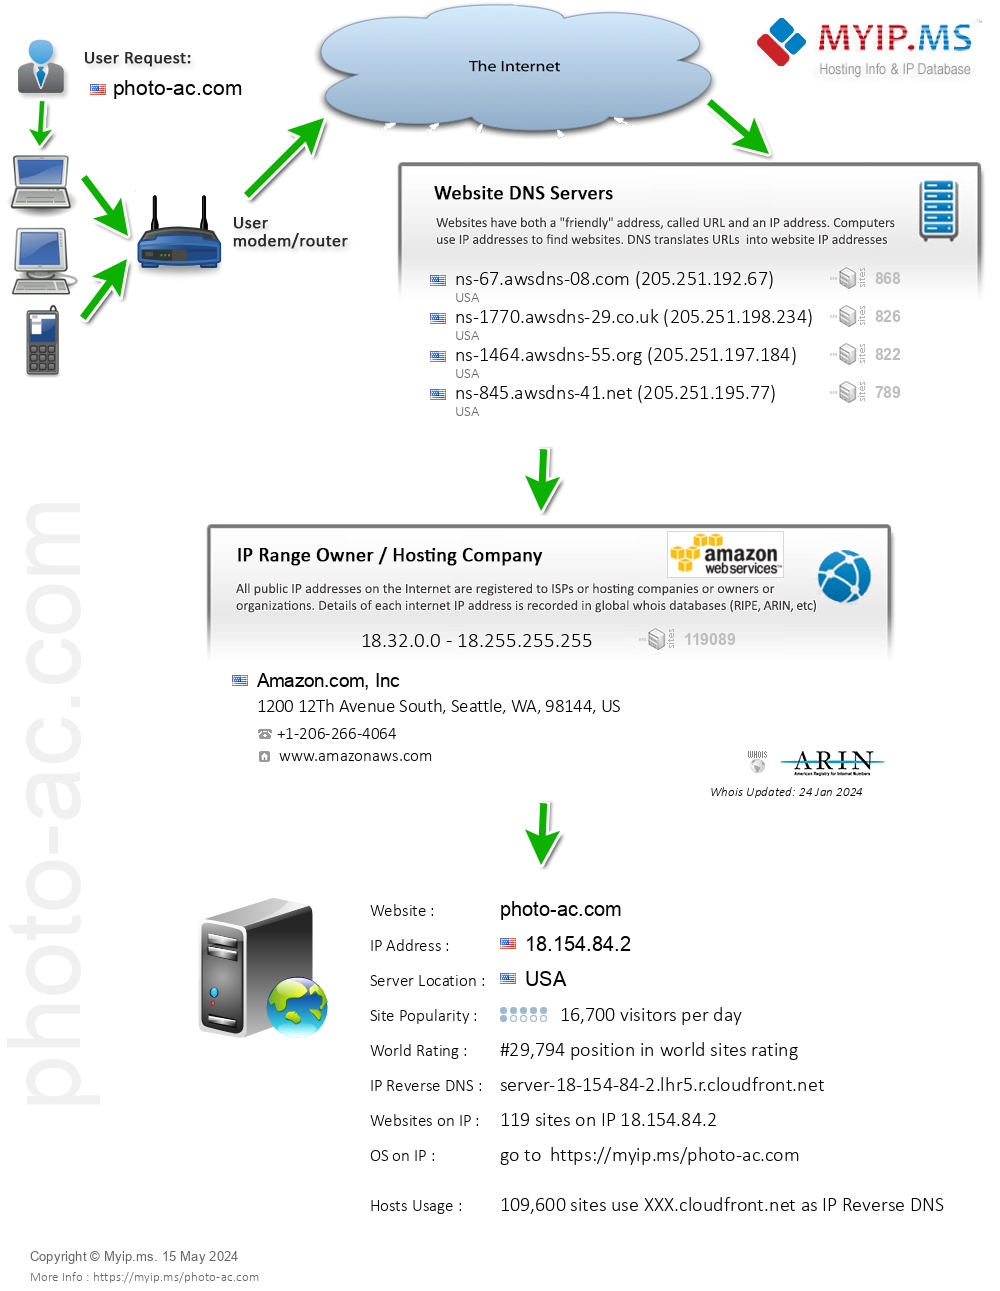 Photo-ac.com - Website Hosting Visual IP Diagram